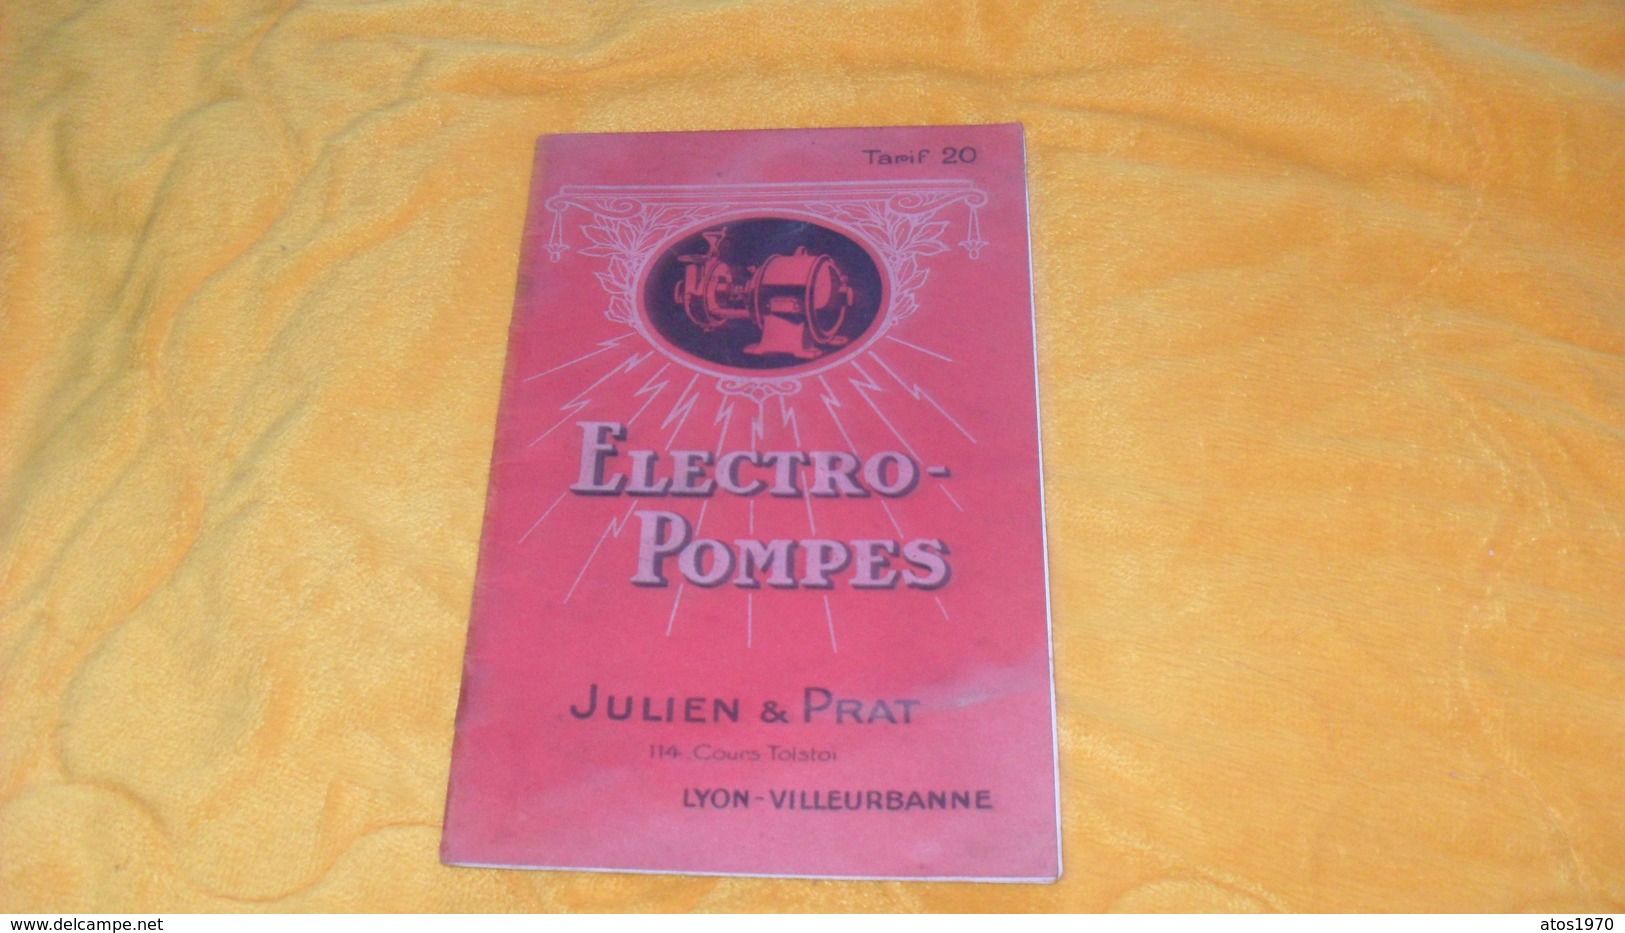 CATALOGUE TARIF ANCIEN DE MARS 1925..JULIEN & PRAT LYON VILLEURBANNE..ELECTRO POMPES..TARIF 20.. - Publicités